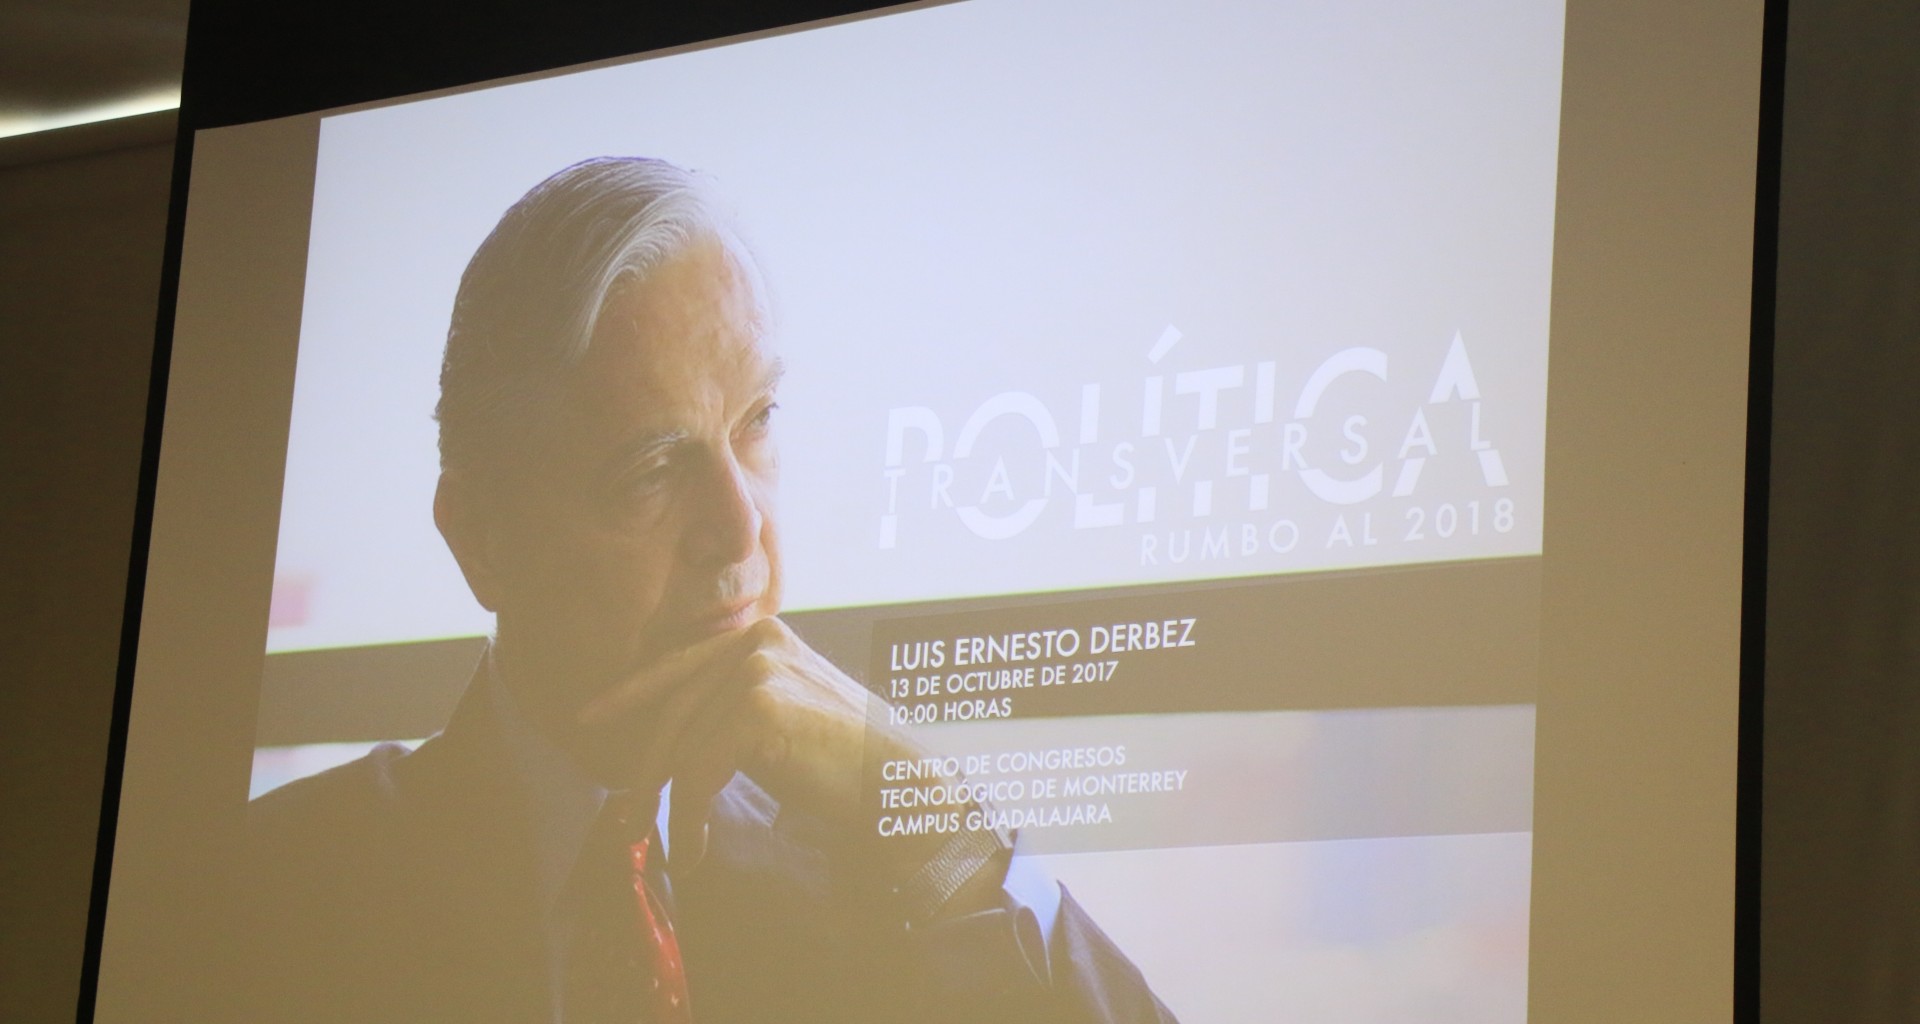 Pedro Ferriz de Con, Rafael Moreno Valle y Luis Ernesto Derbez, fueron algunos de los invitados que expusieron en este encuentro.